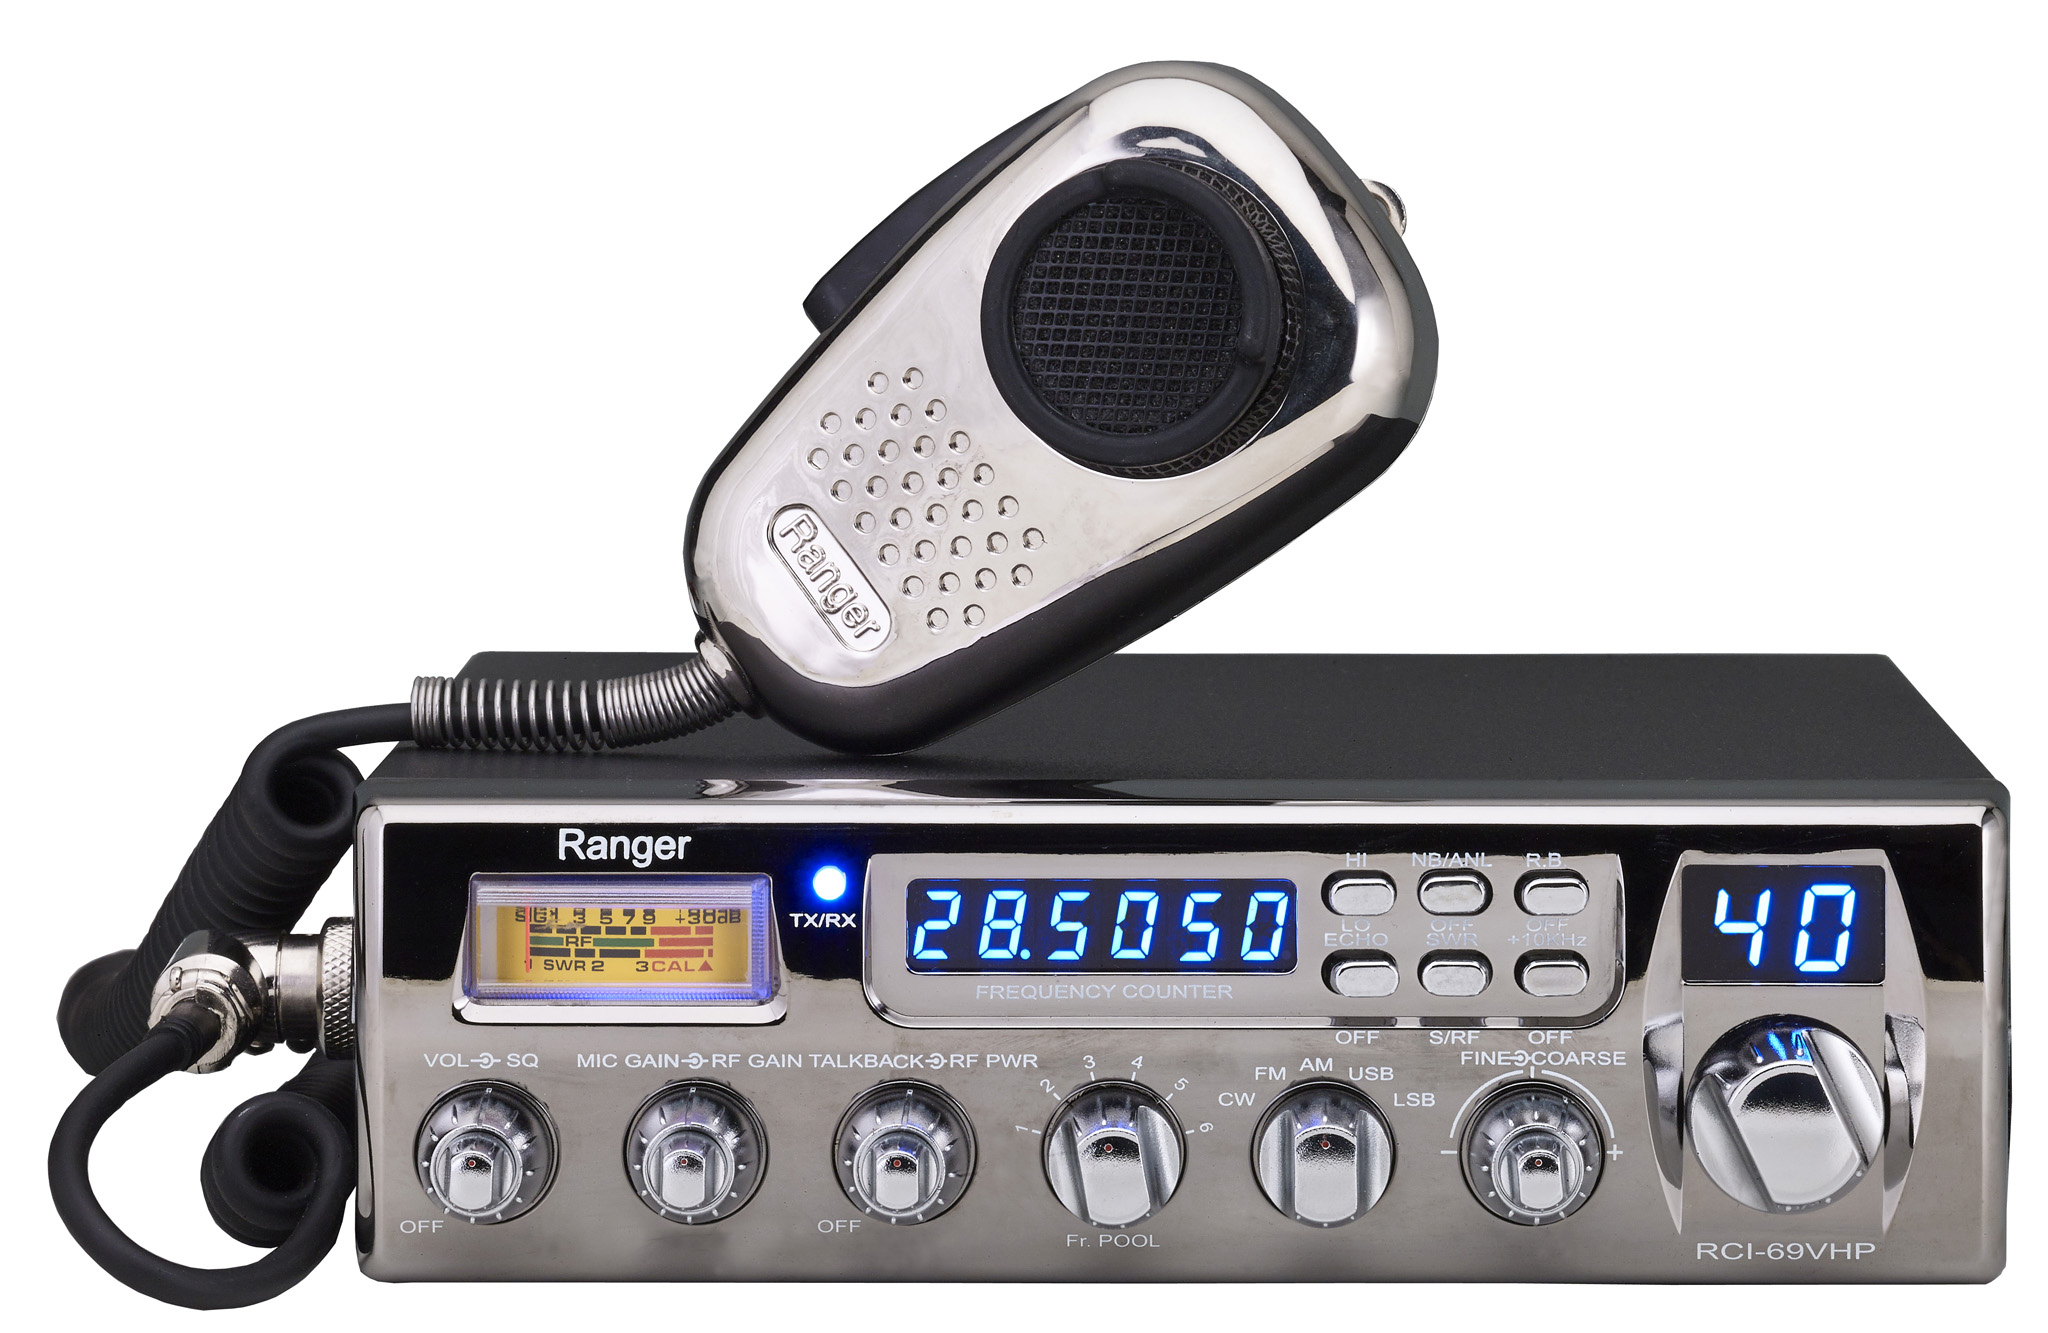 Ranger RCI-69VHP - 10 Meter Amateur Radio